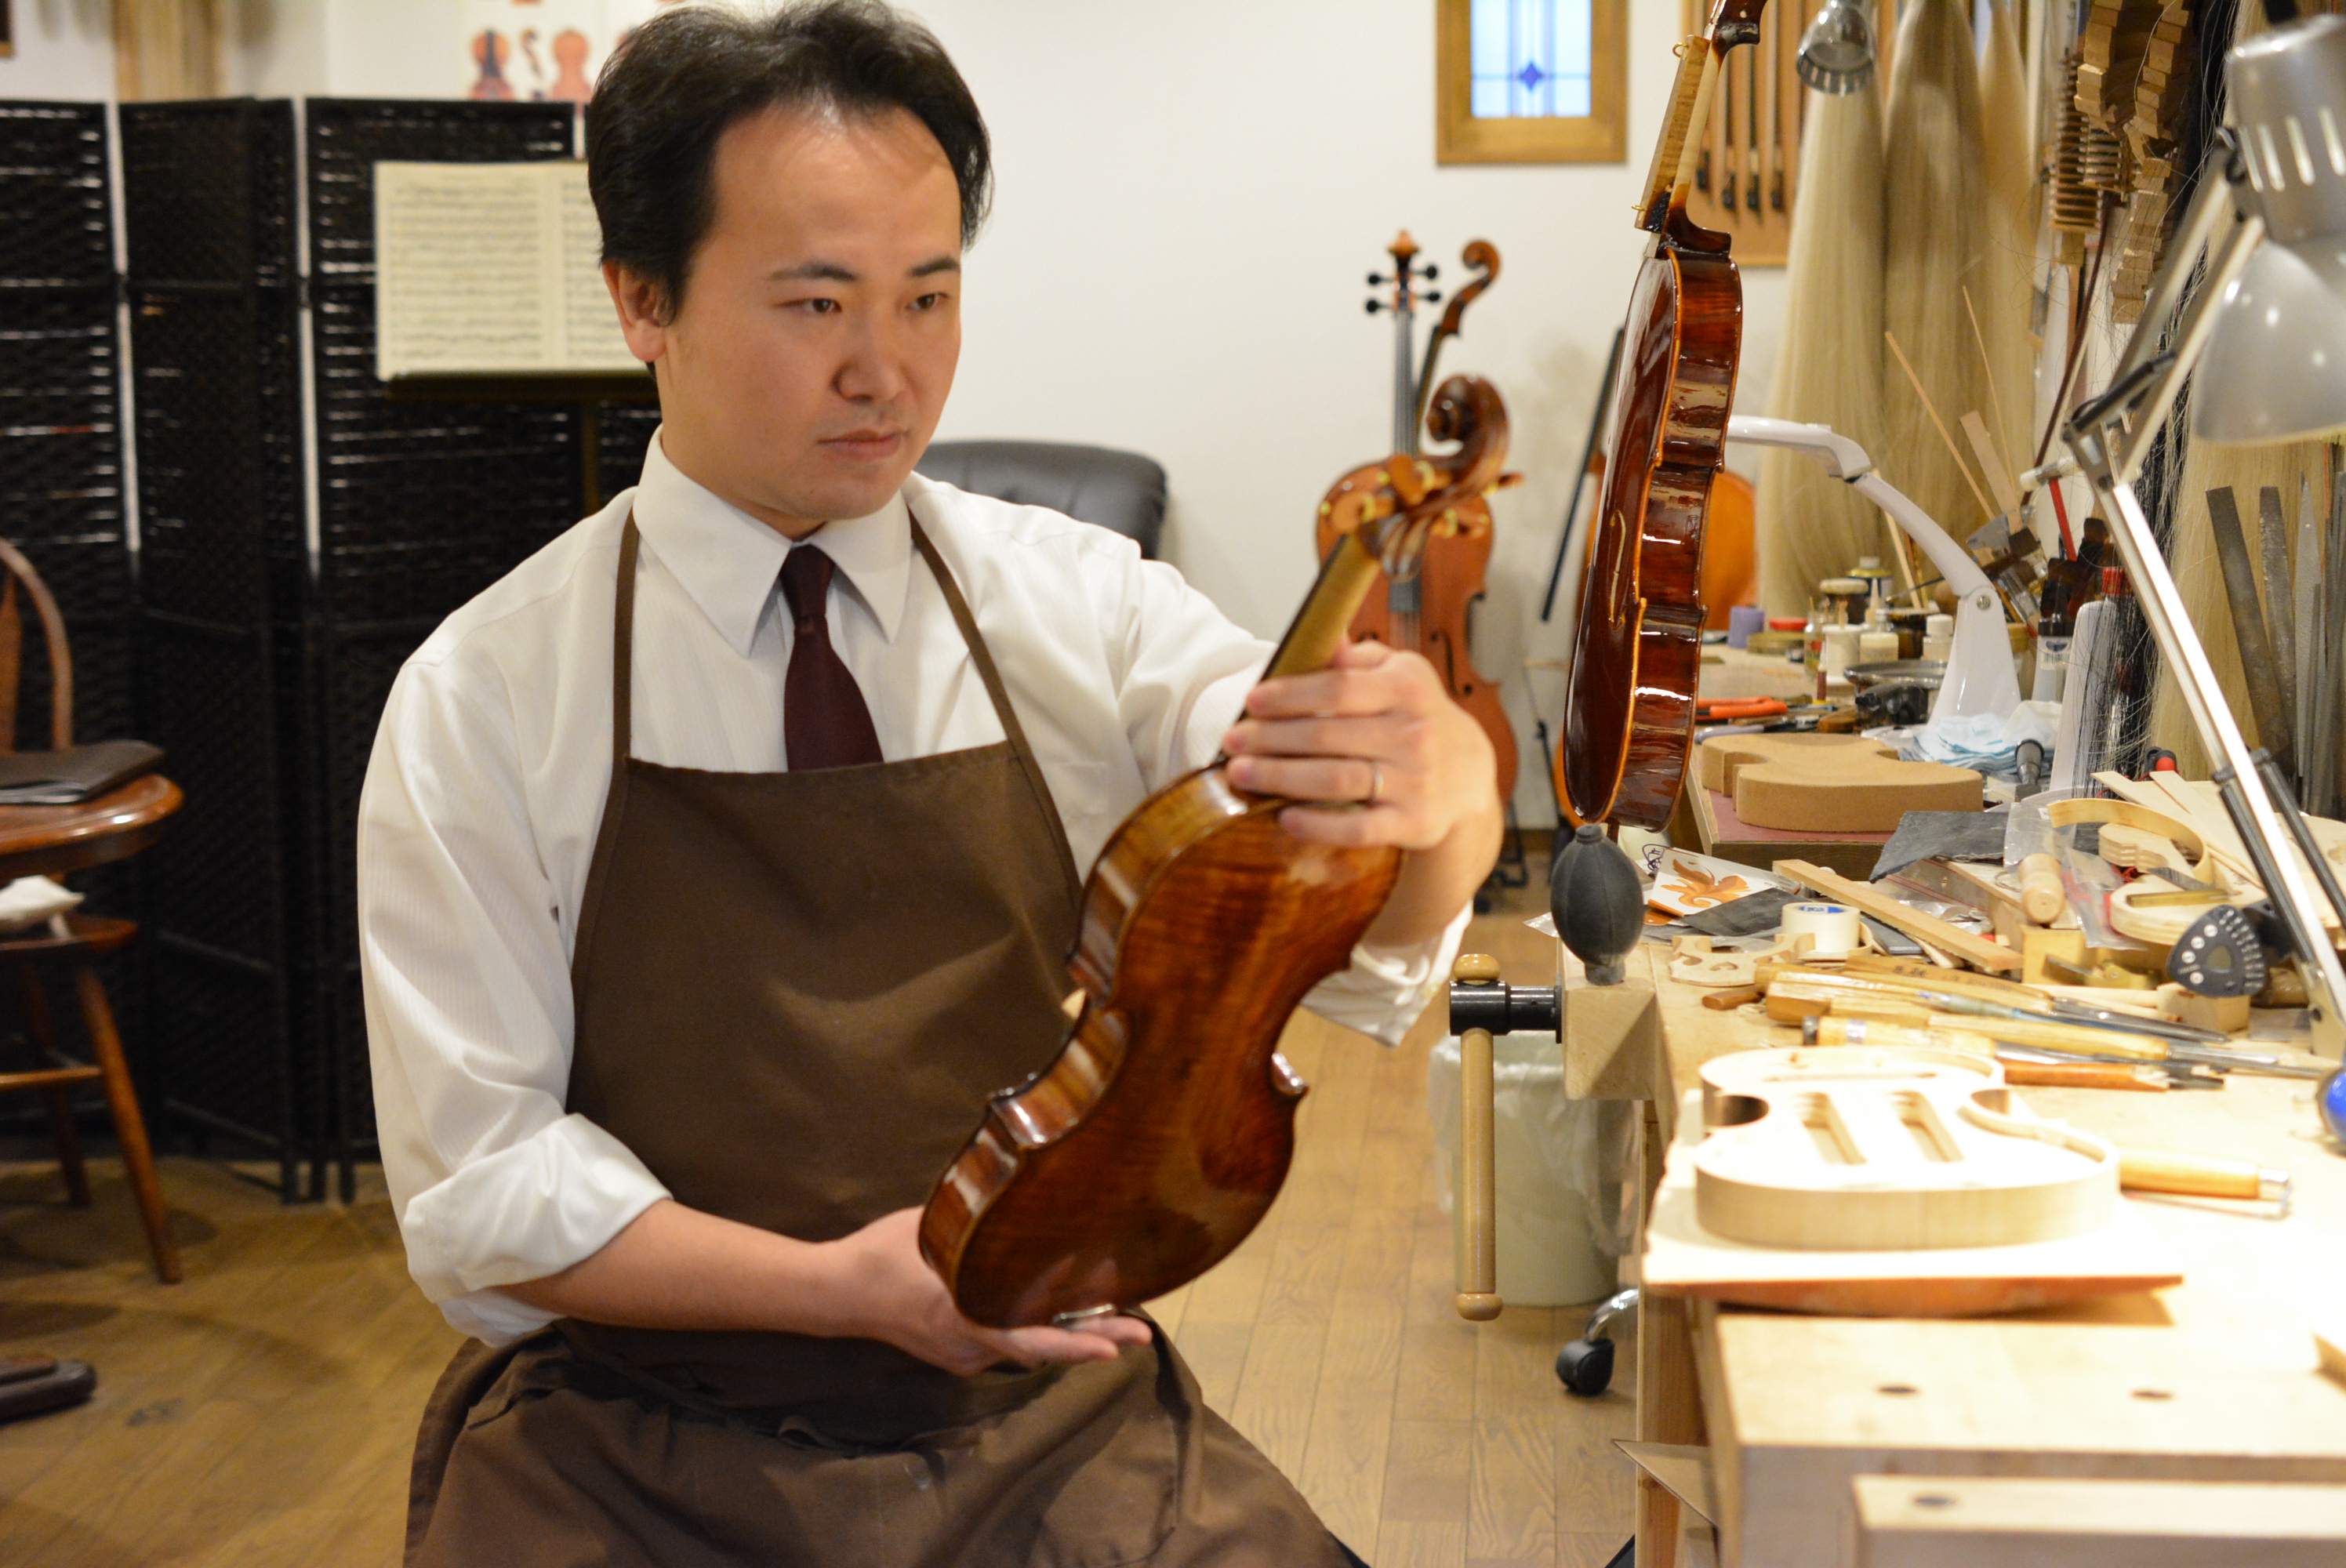 京都市中京区、TAKADA弦楽器。ディプロマ取得のプロ、高田博史がバイオリンやビオラなど弦楽器の製作・修理・販売・調整いたします。